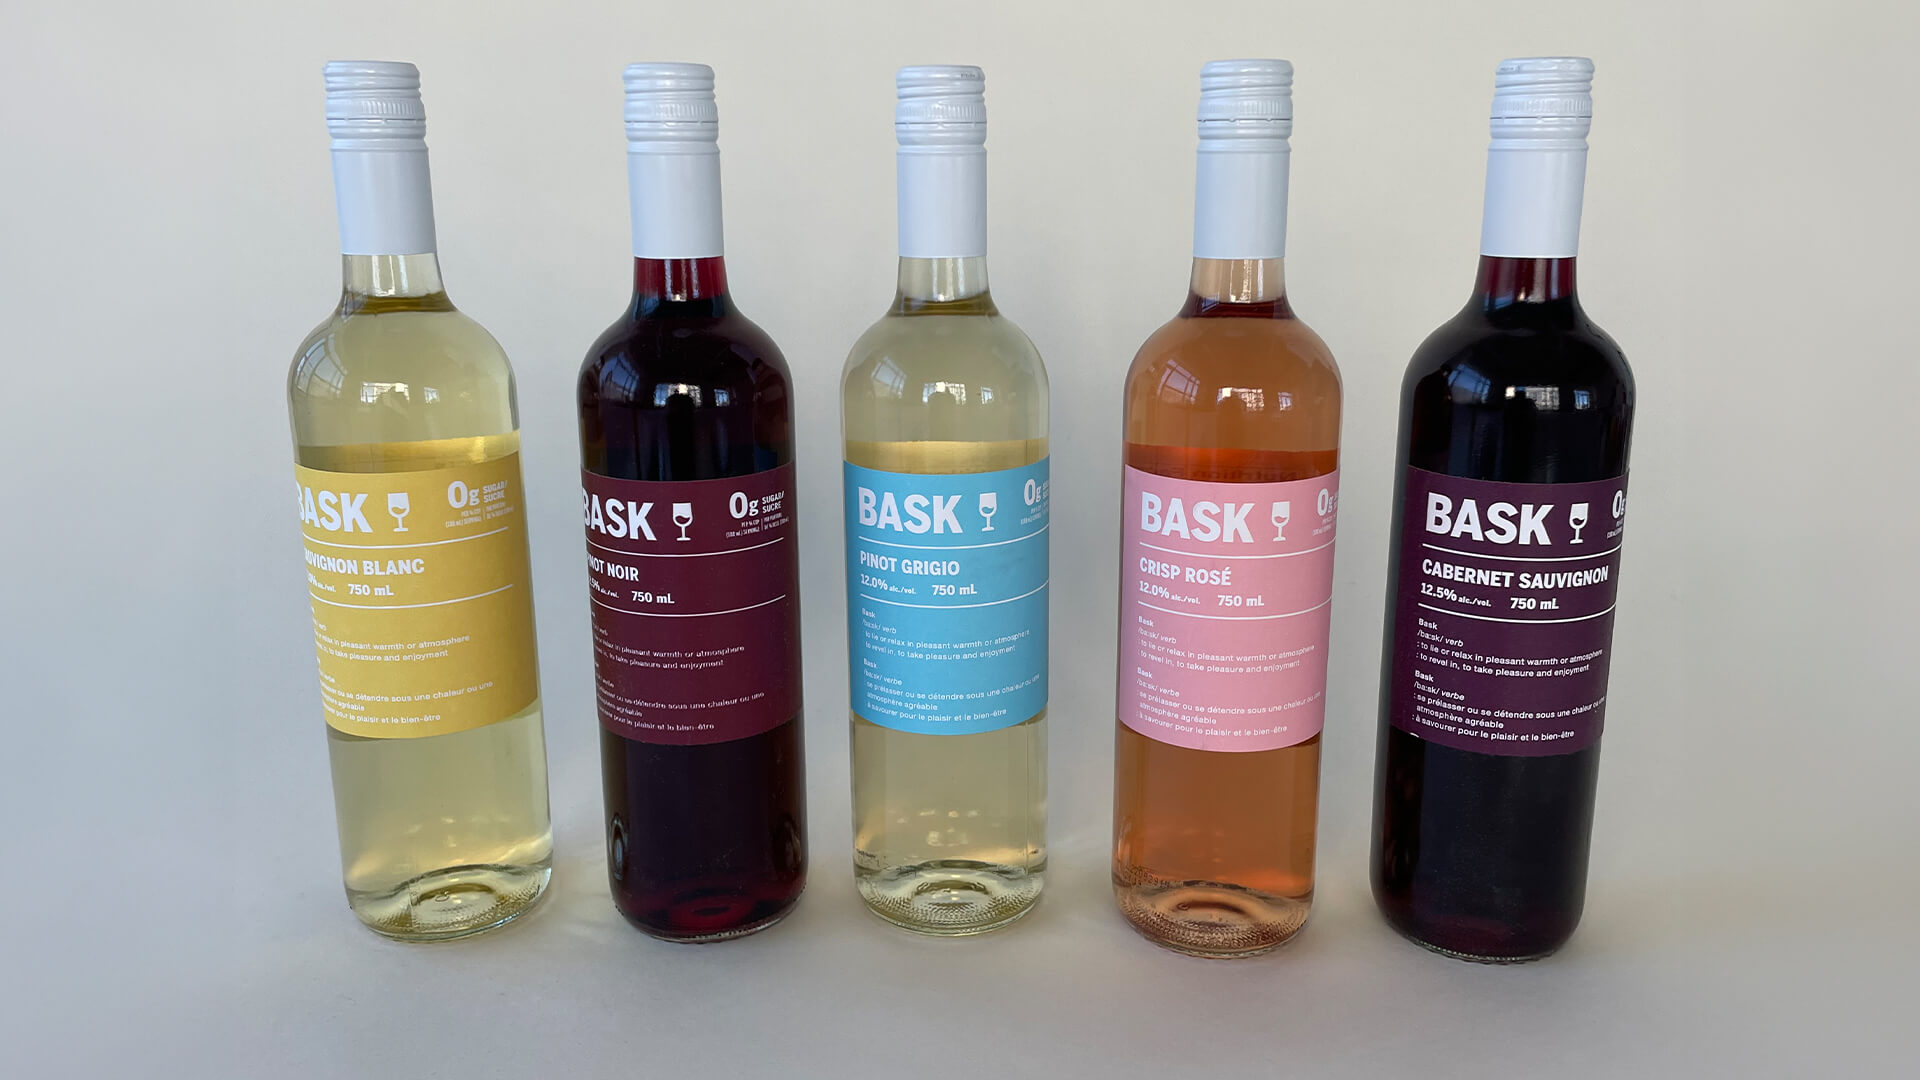 Bottles of Bask wine.